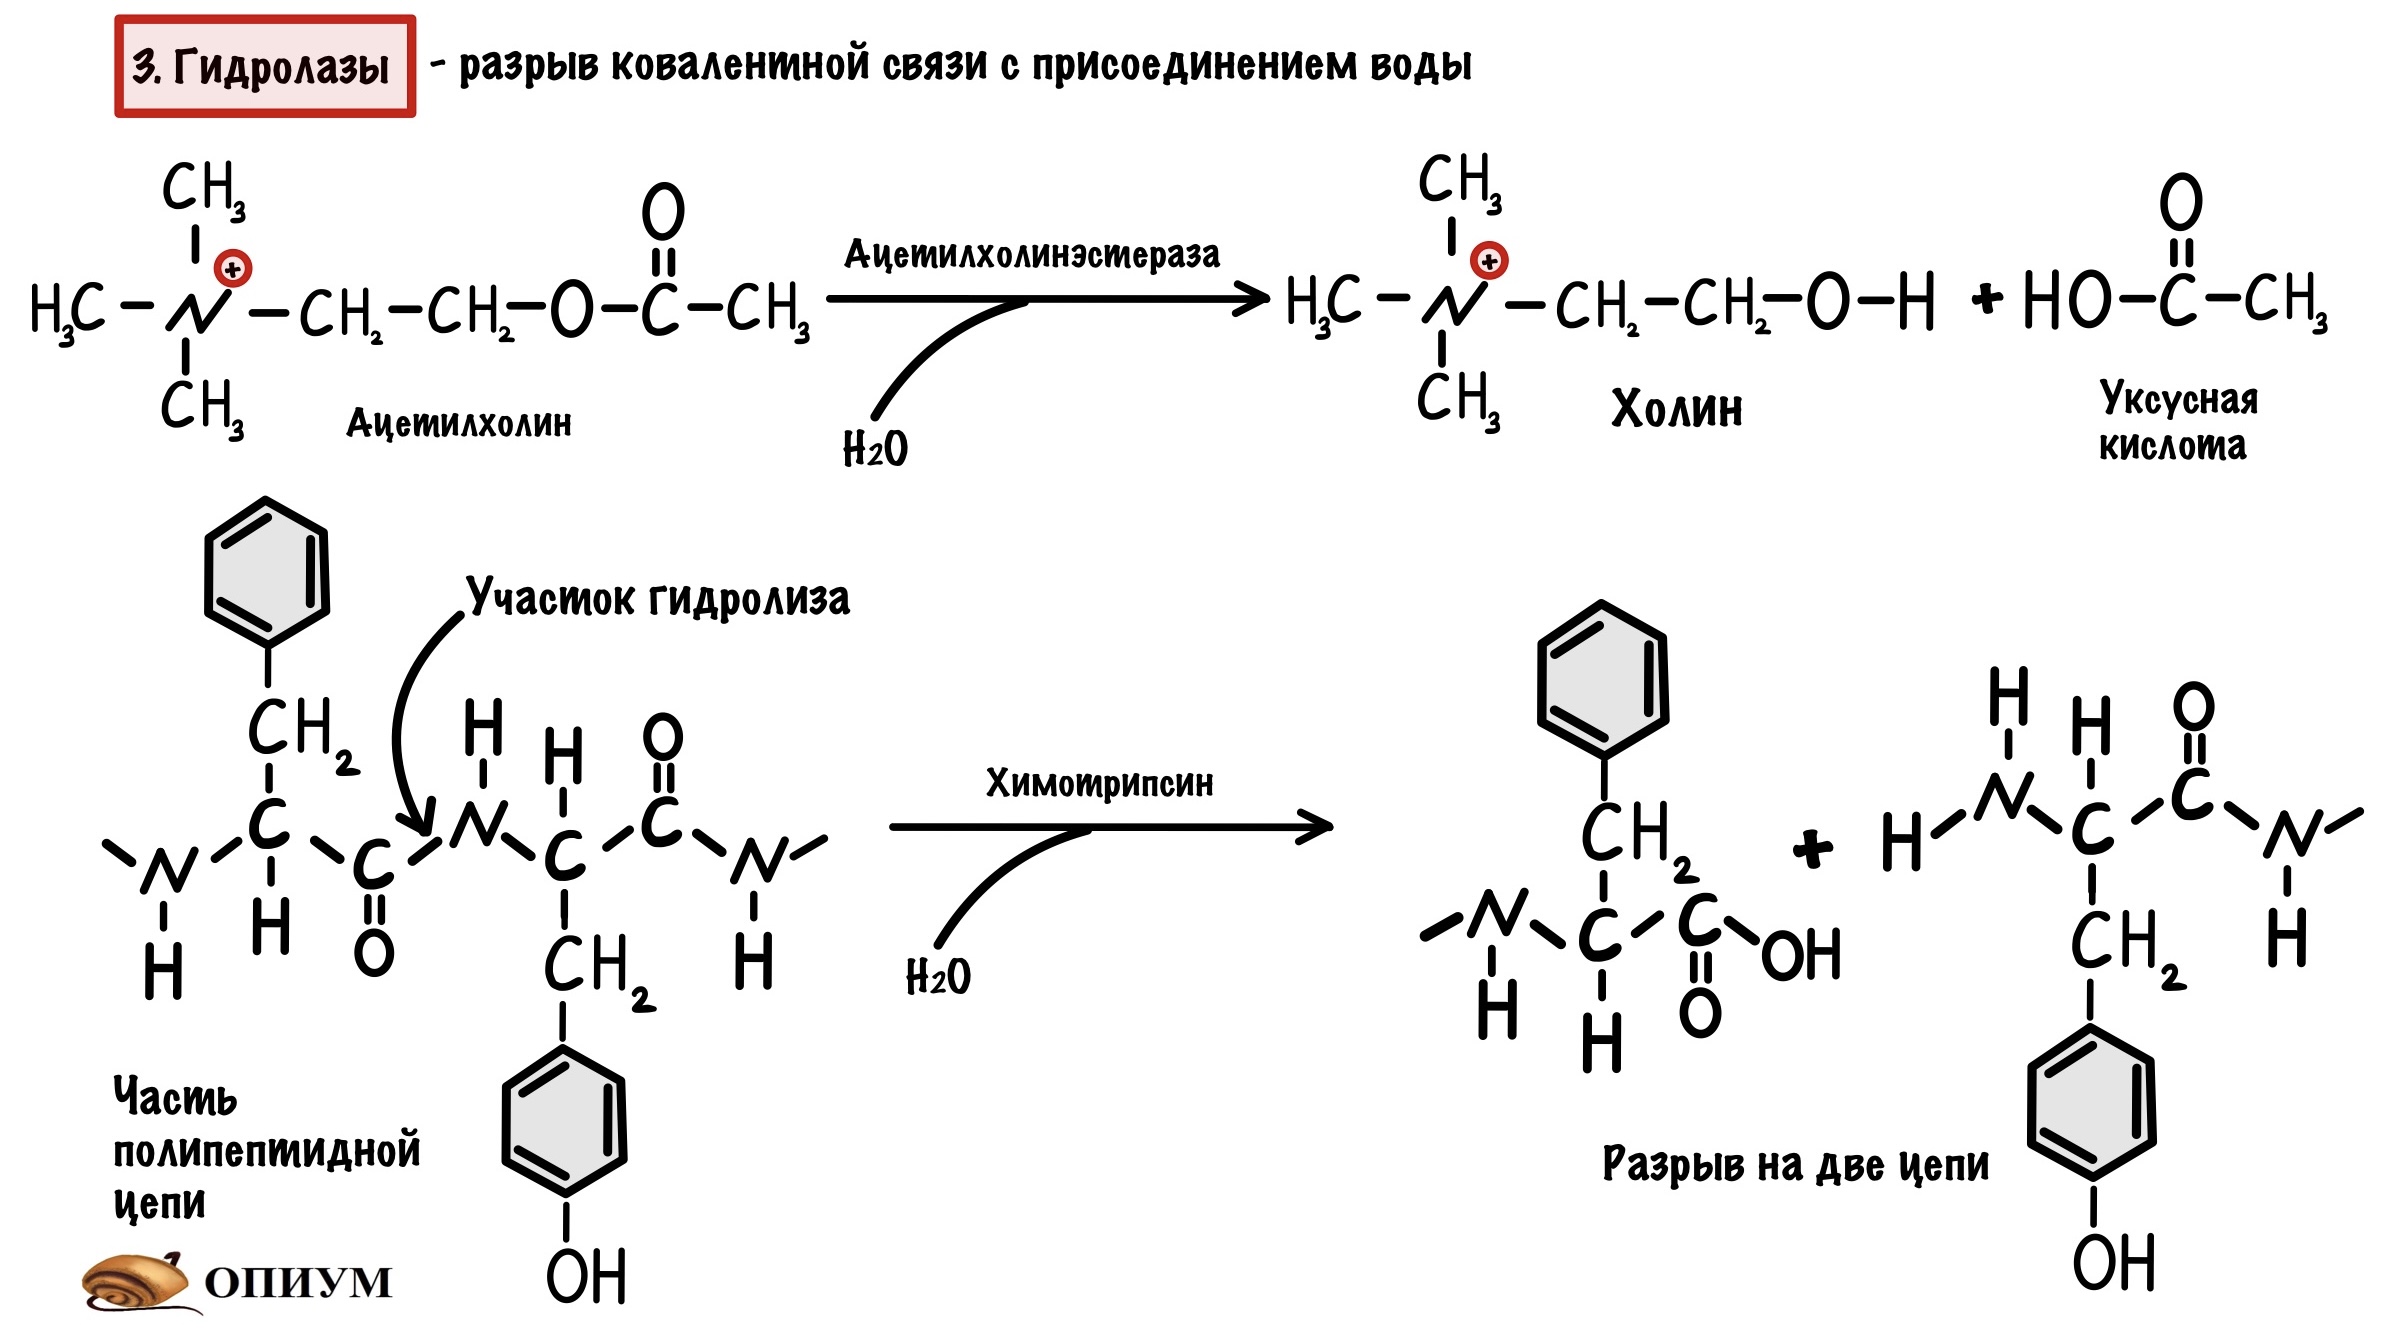 Химическая реакция катализируемая ферментом